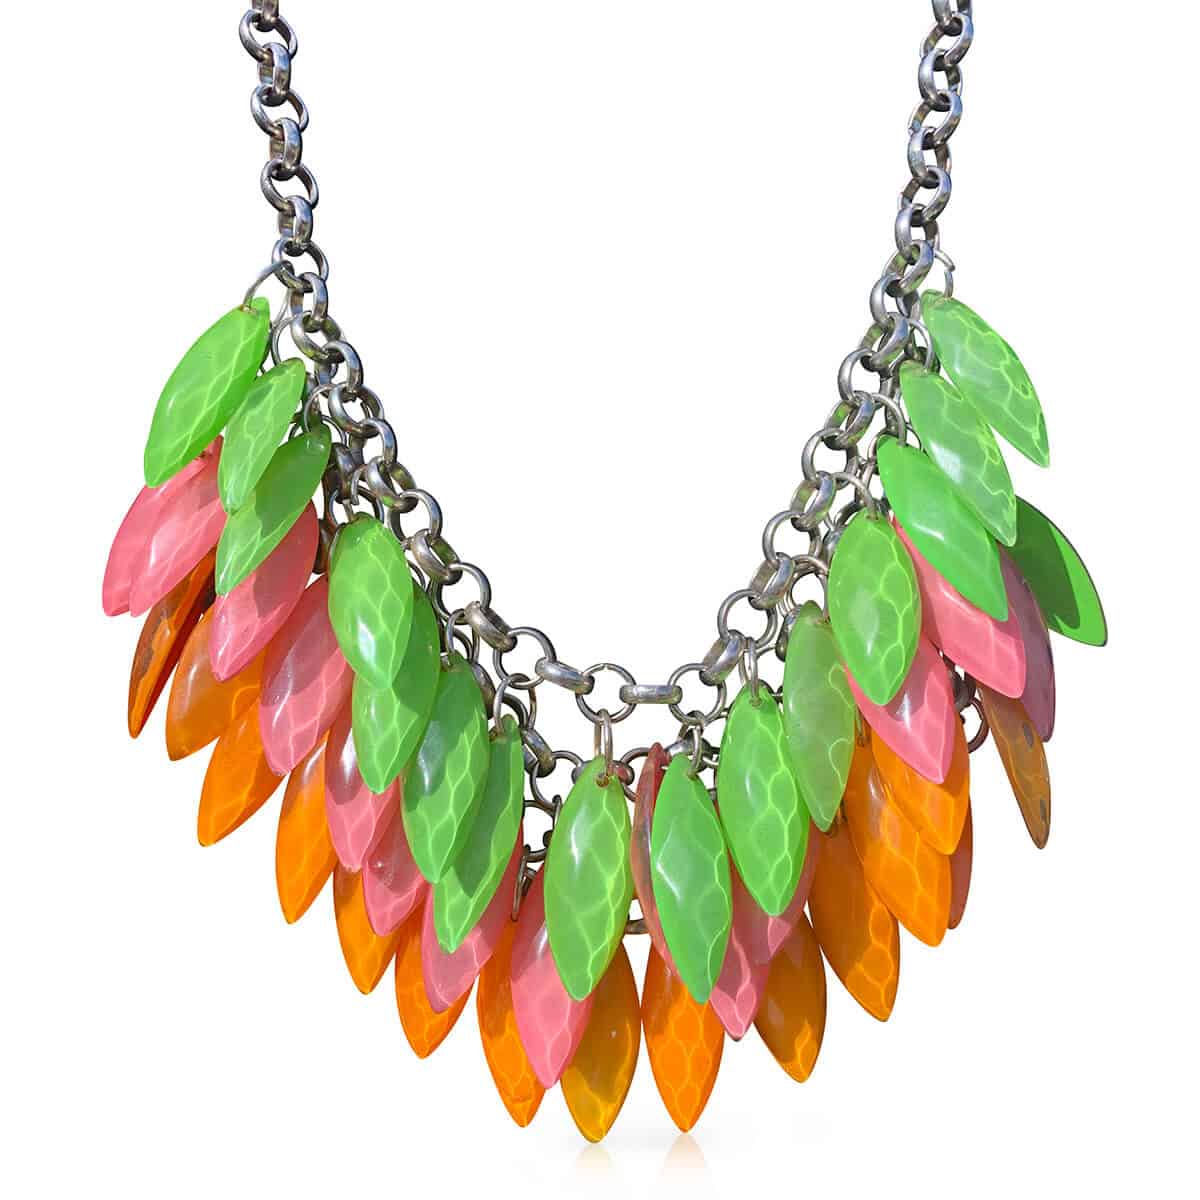 Green and orange leaf necklace